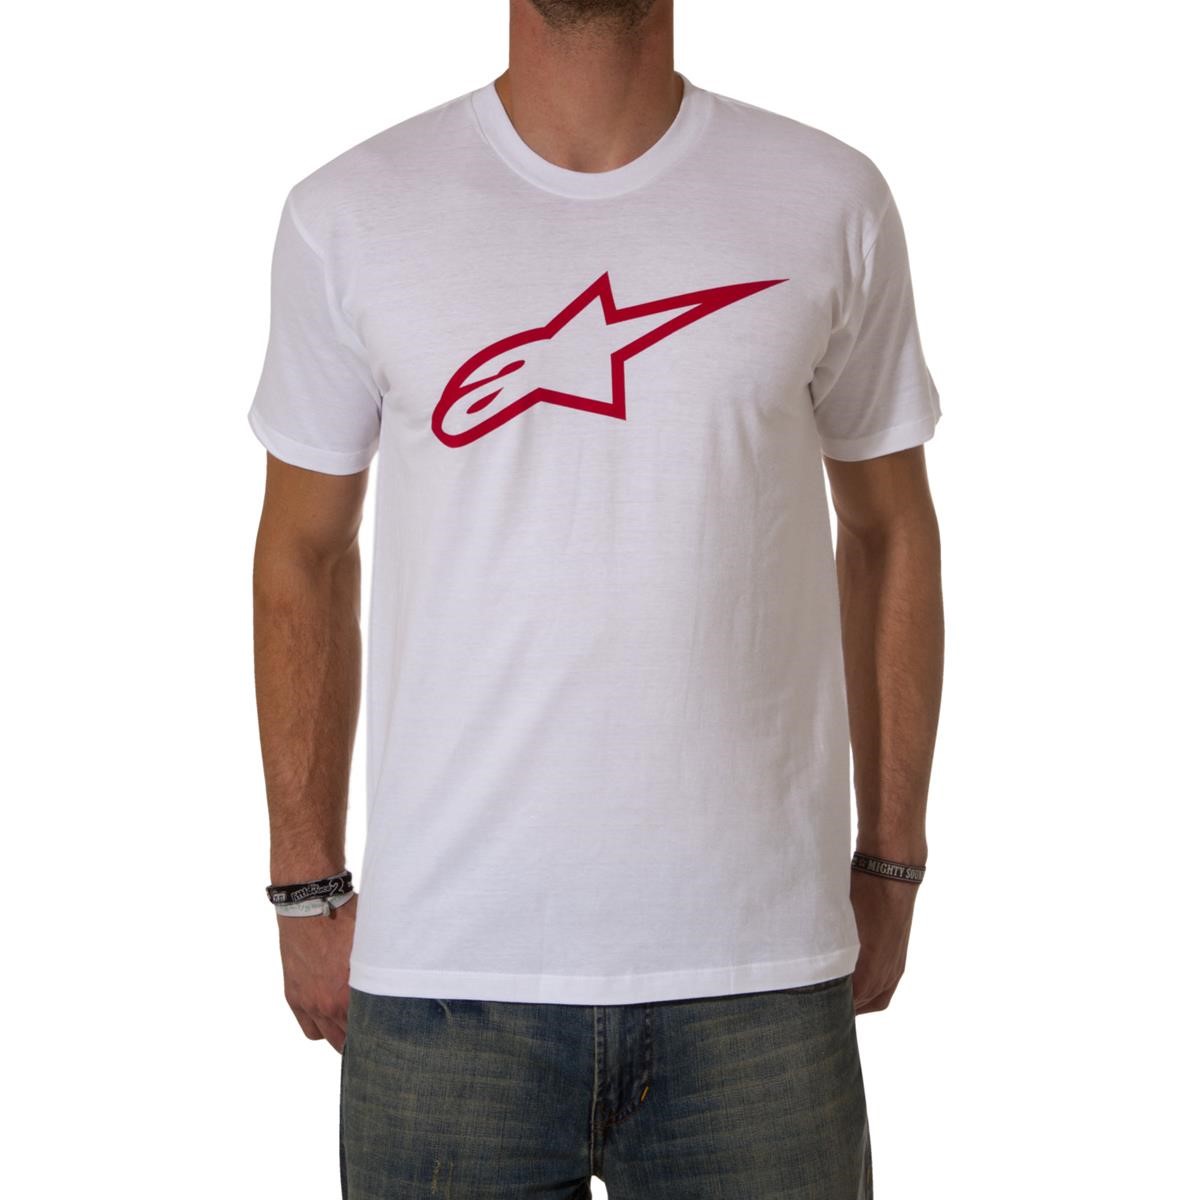 Freizeit/Streetwear Bekleidung-T-Shirts/Polos - Alpinestars T-Shirt Alpinestars Logo White/Red